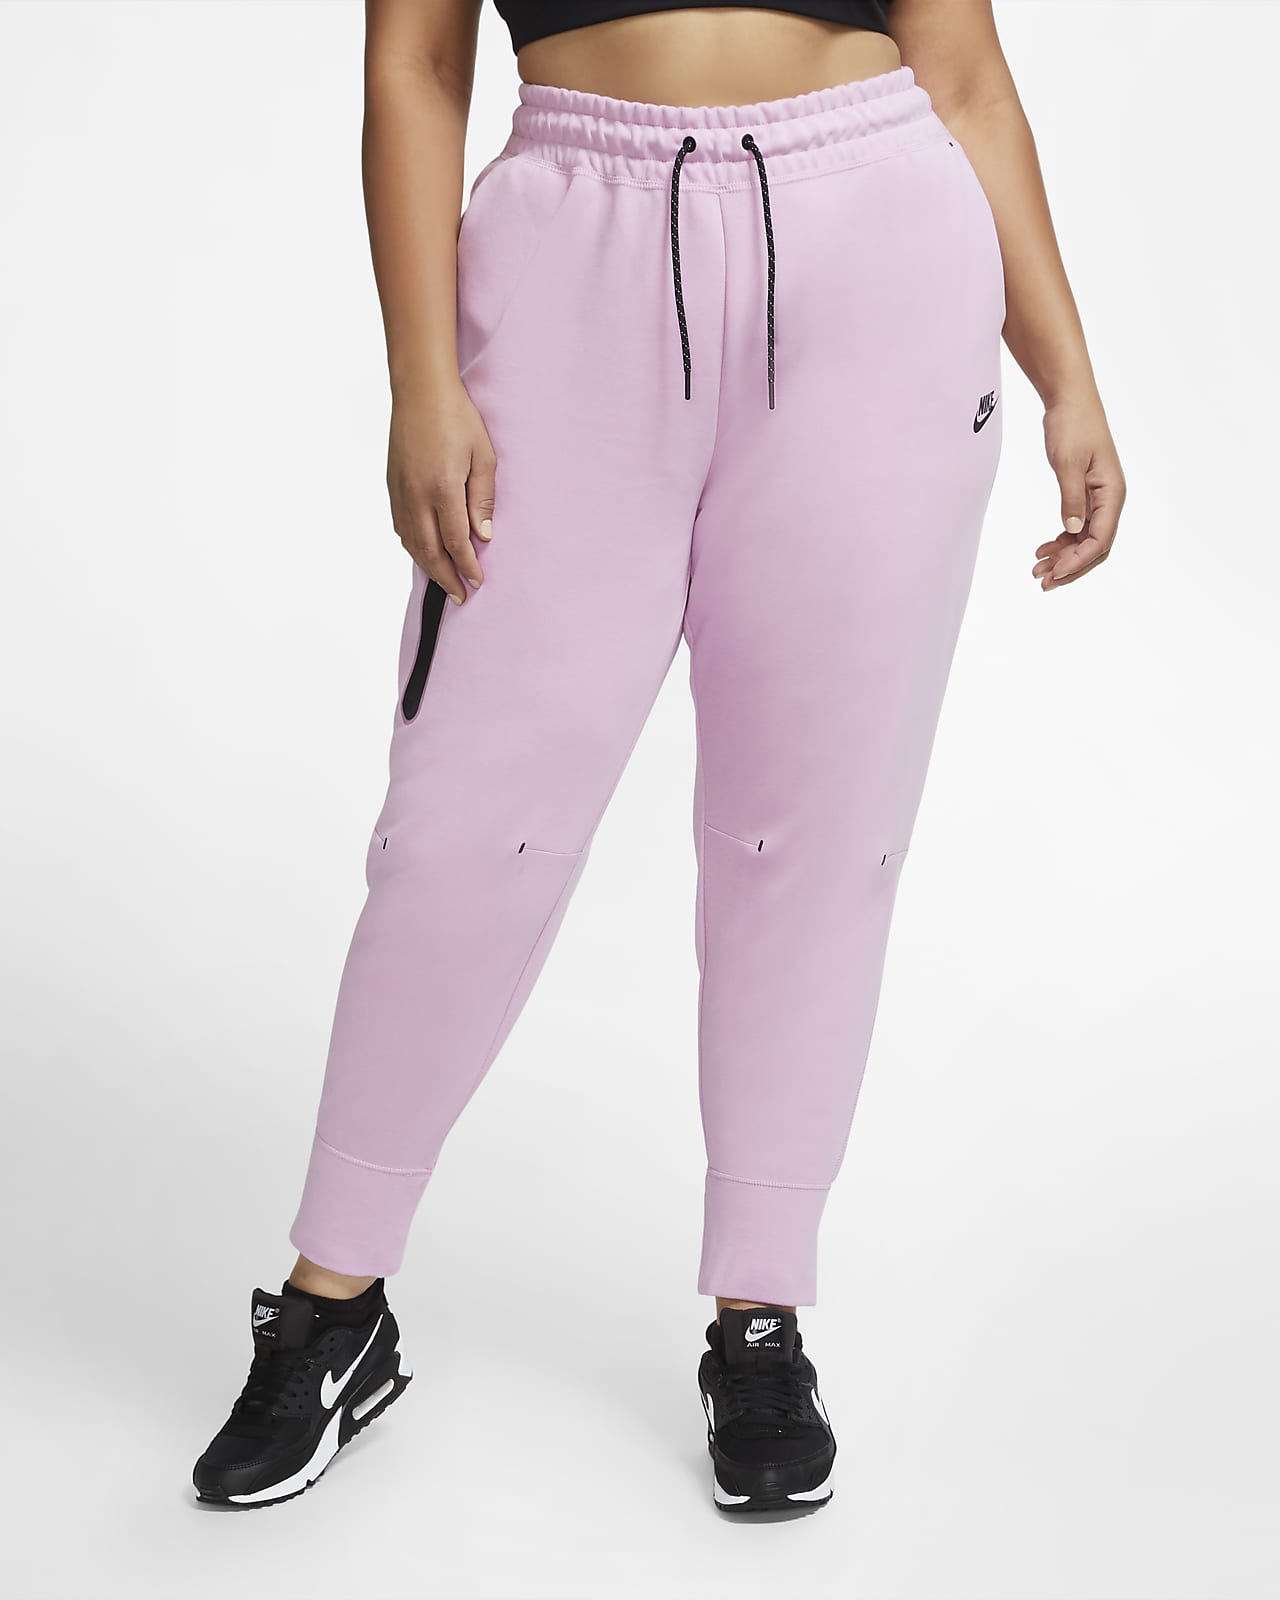 pink plus size pants